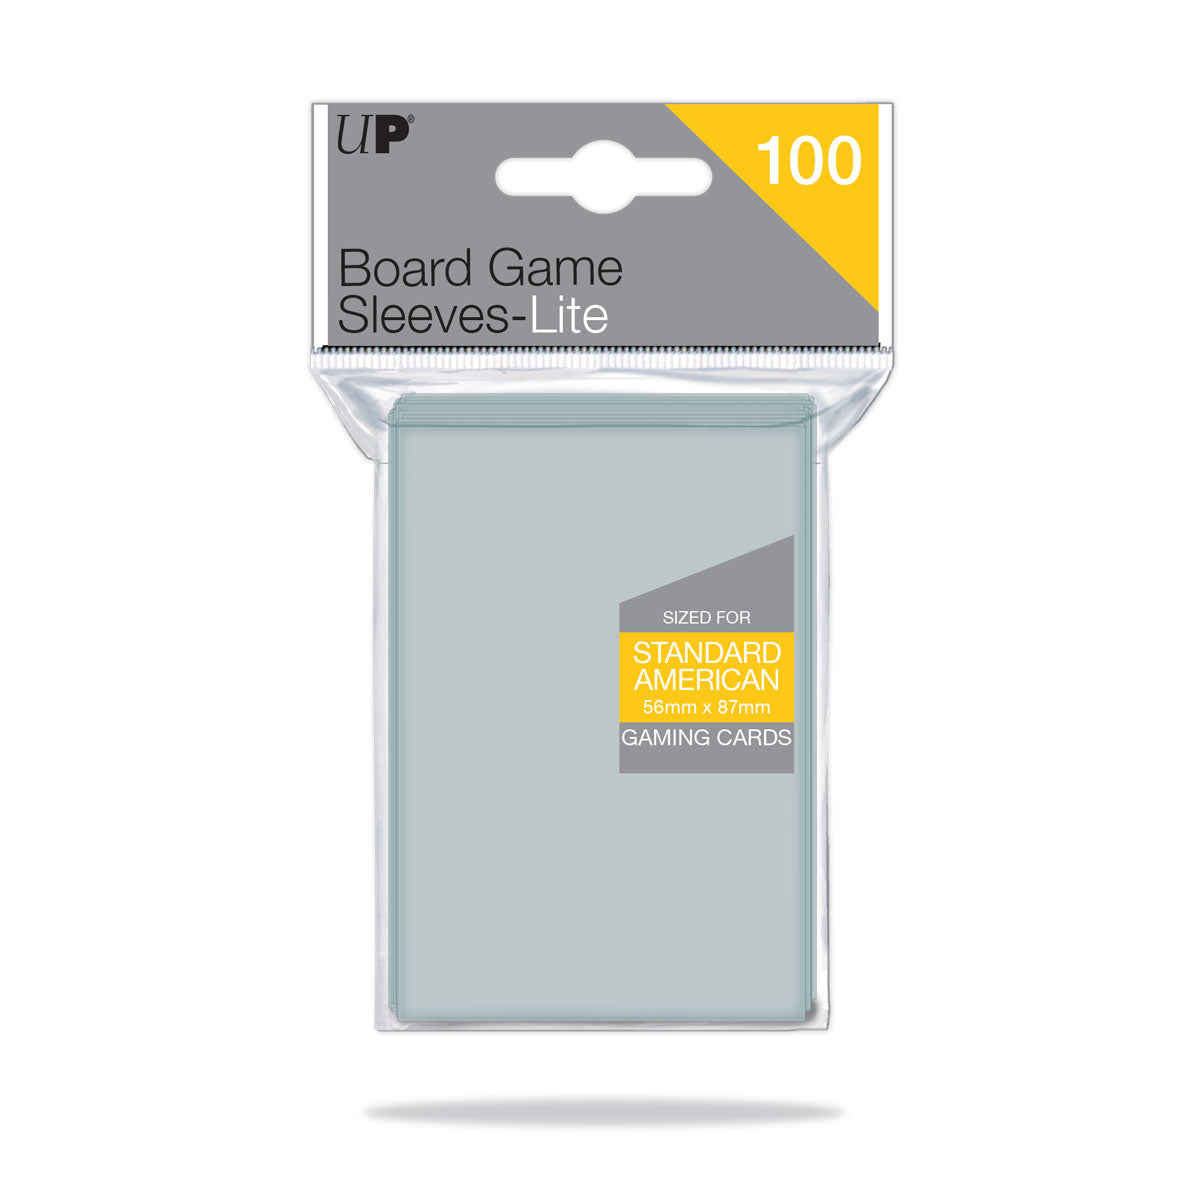 Protèges cartes Spéciaux Matte Board Game Sleeves - Mini European (46x71)  par 50 Anti-Reflets - UltraJeux